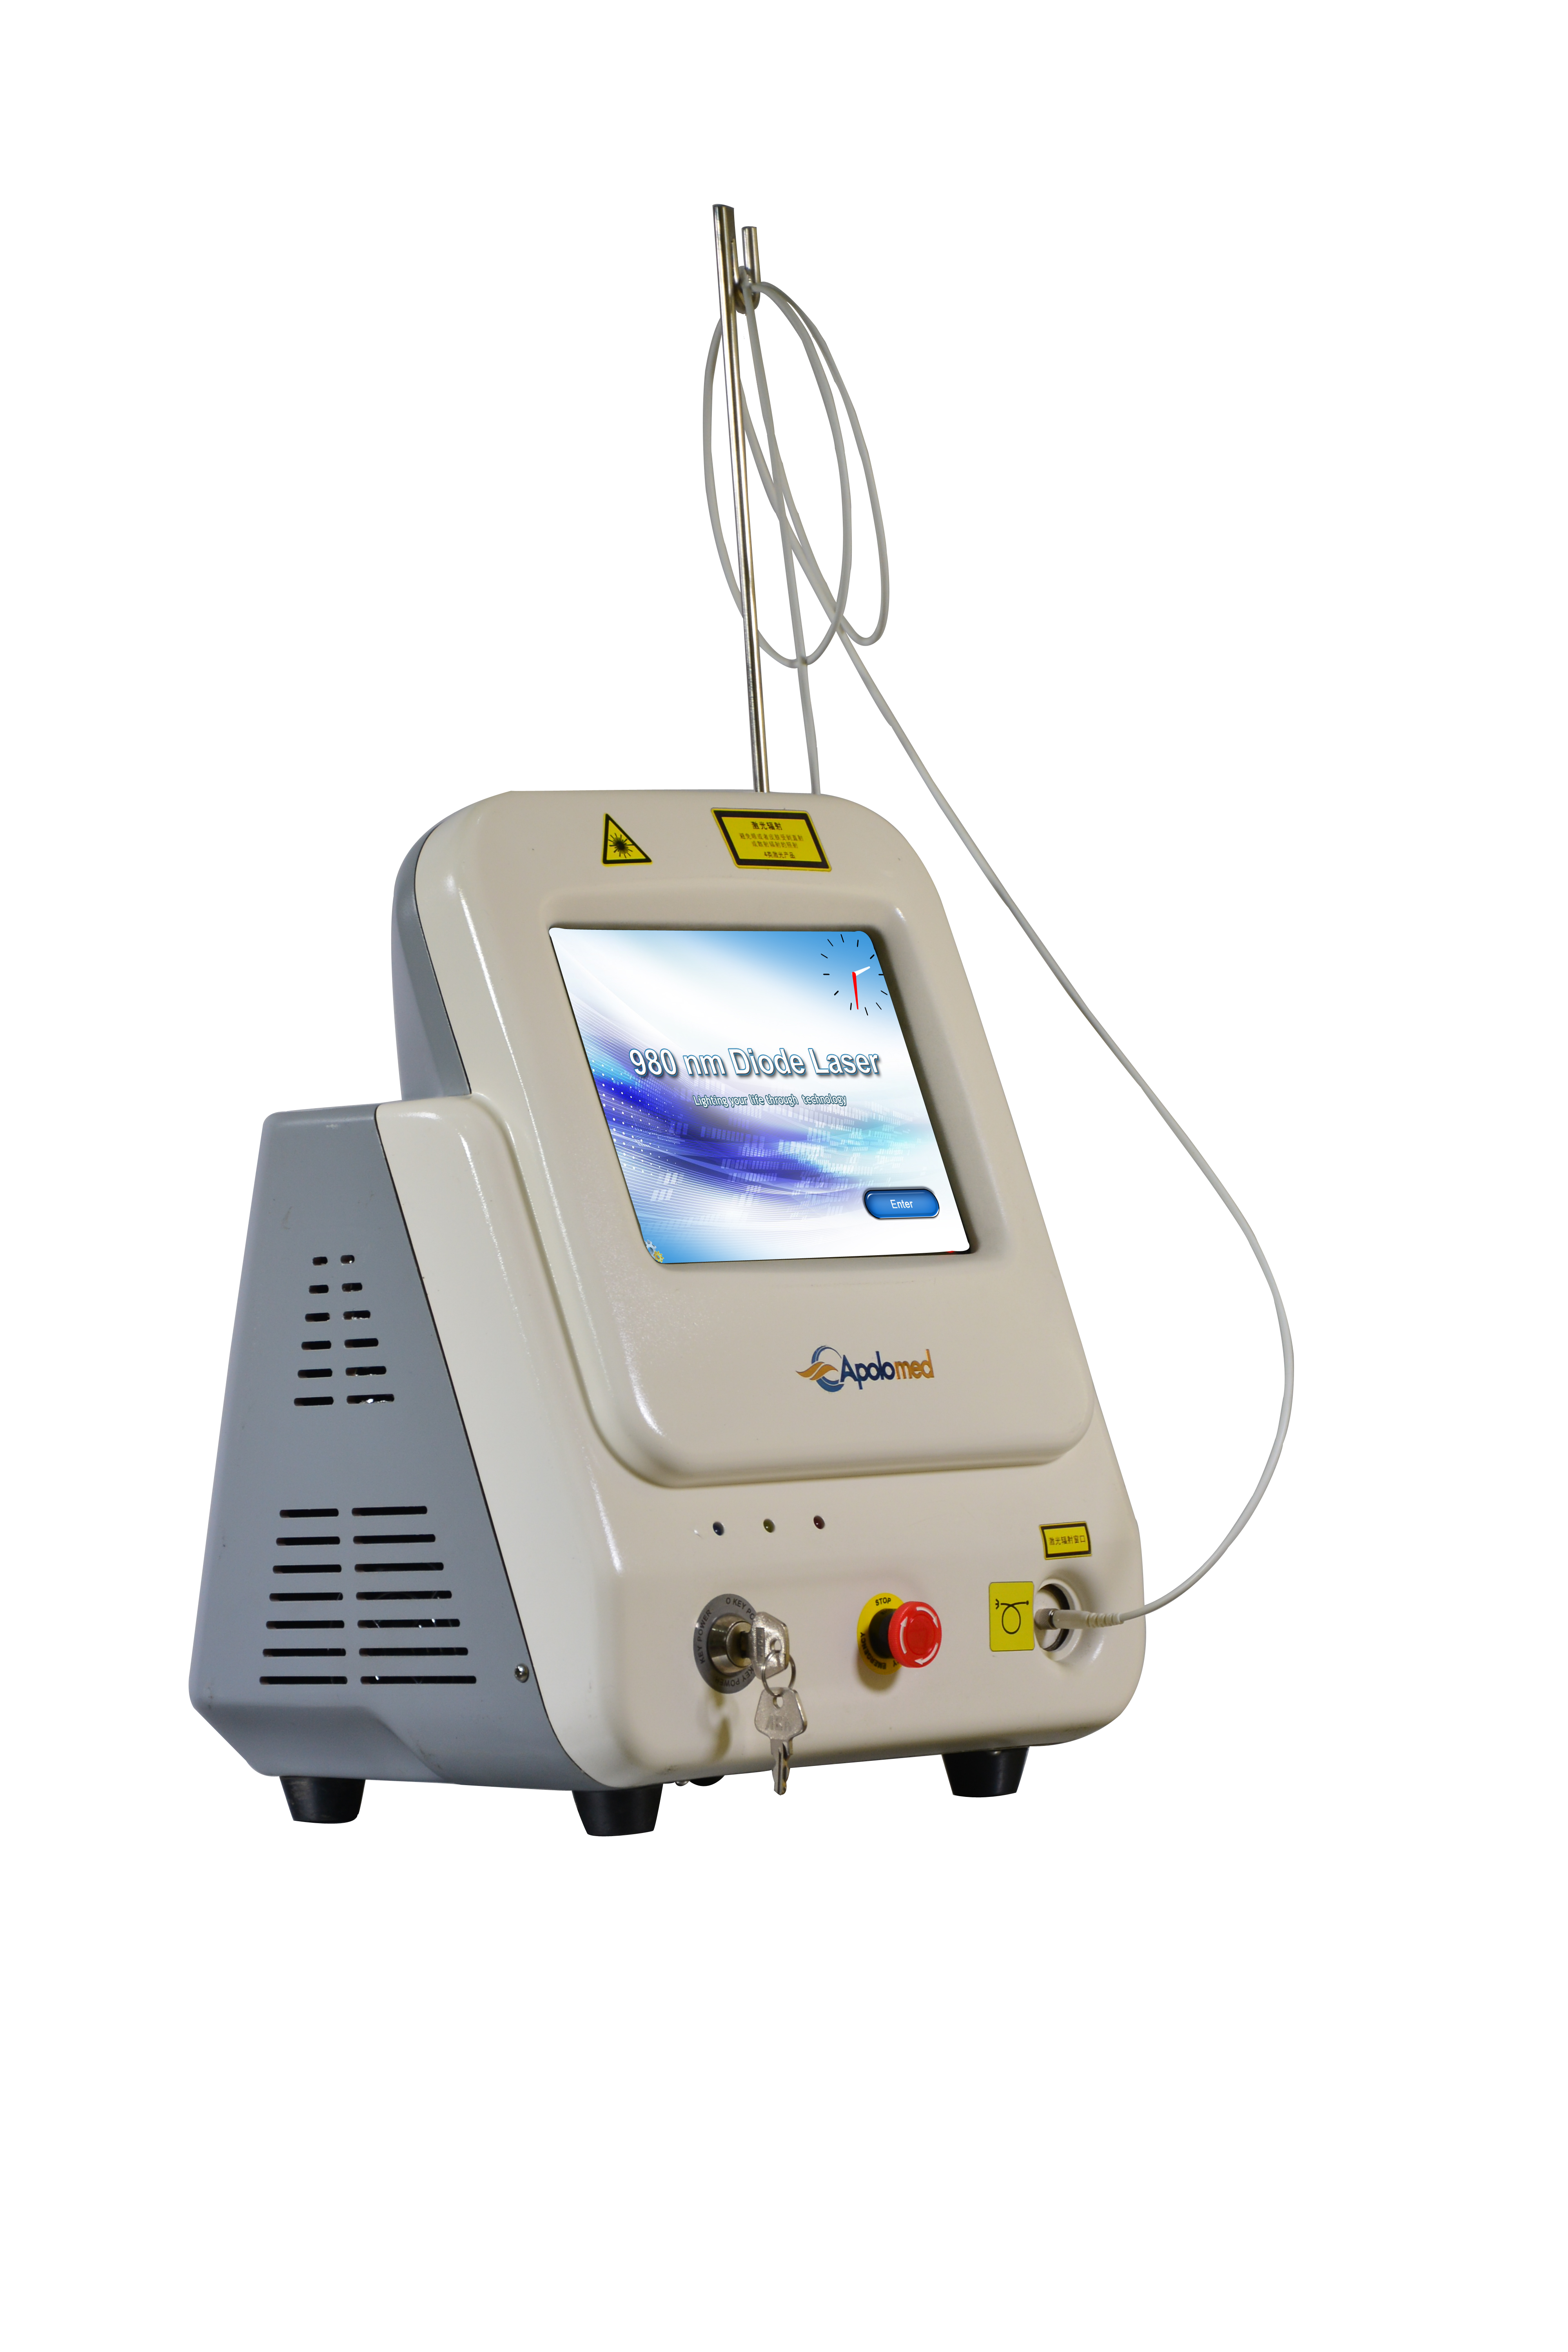 60W Portable Dermatology 980nm Diode Laser